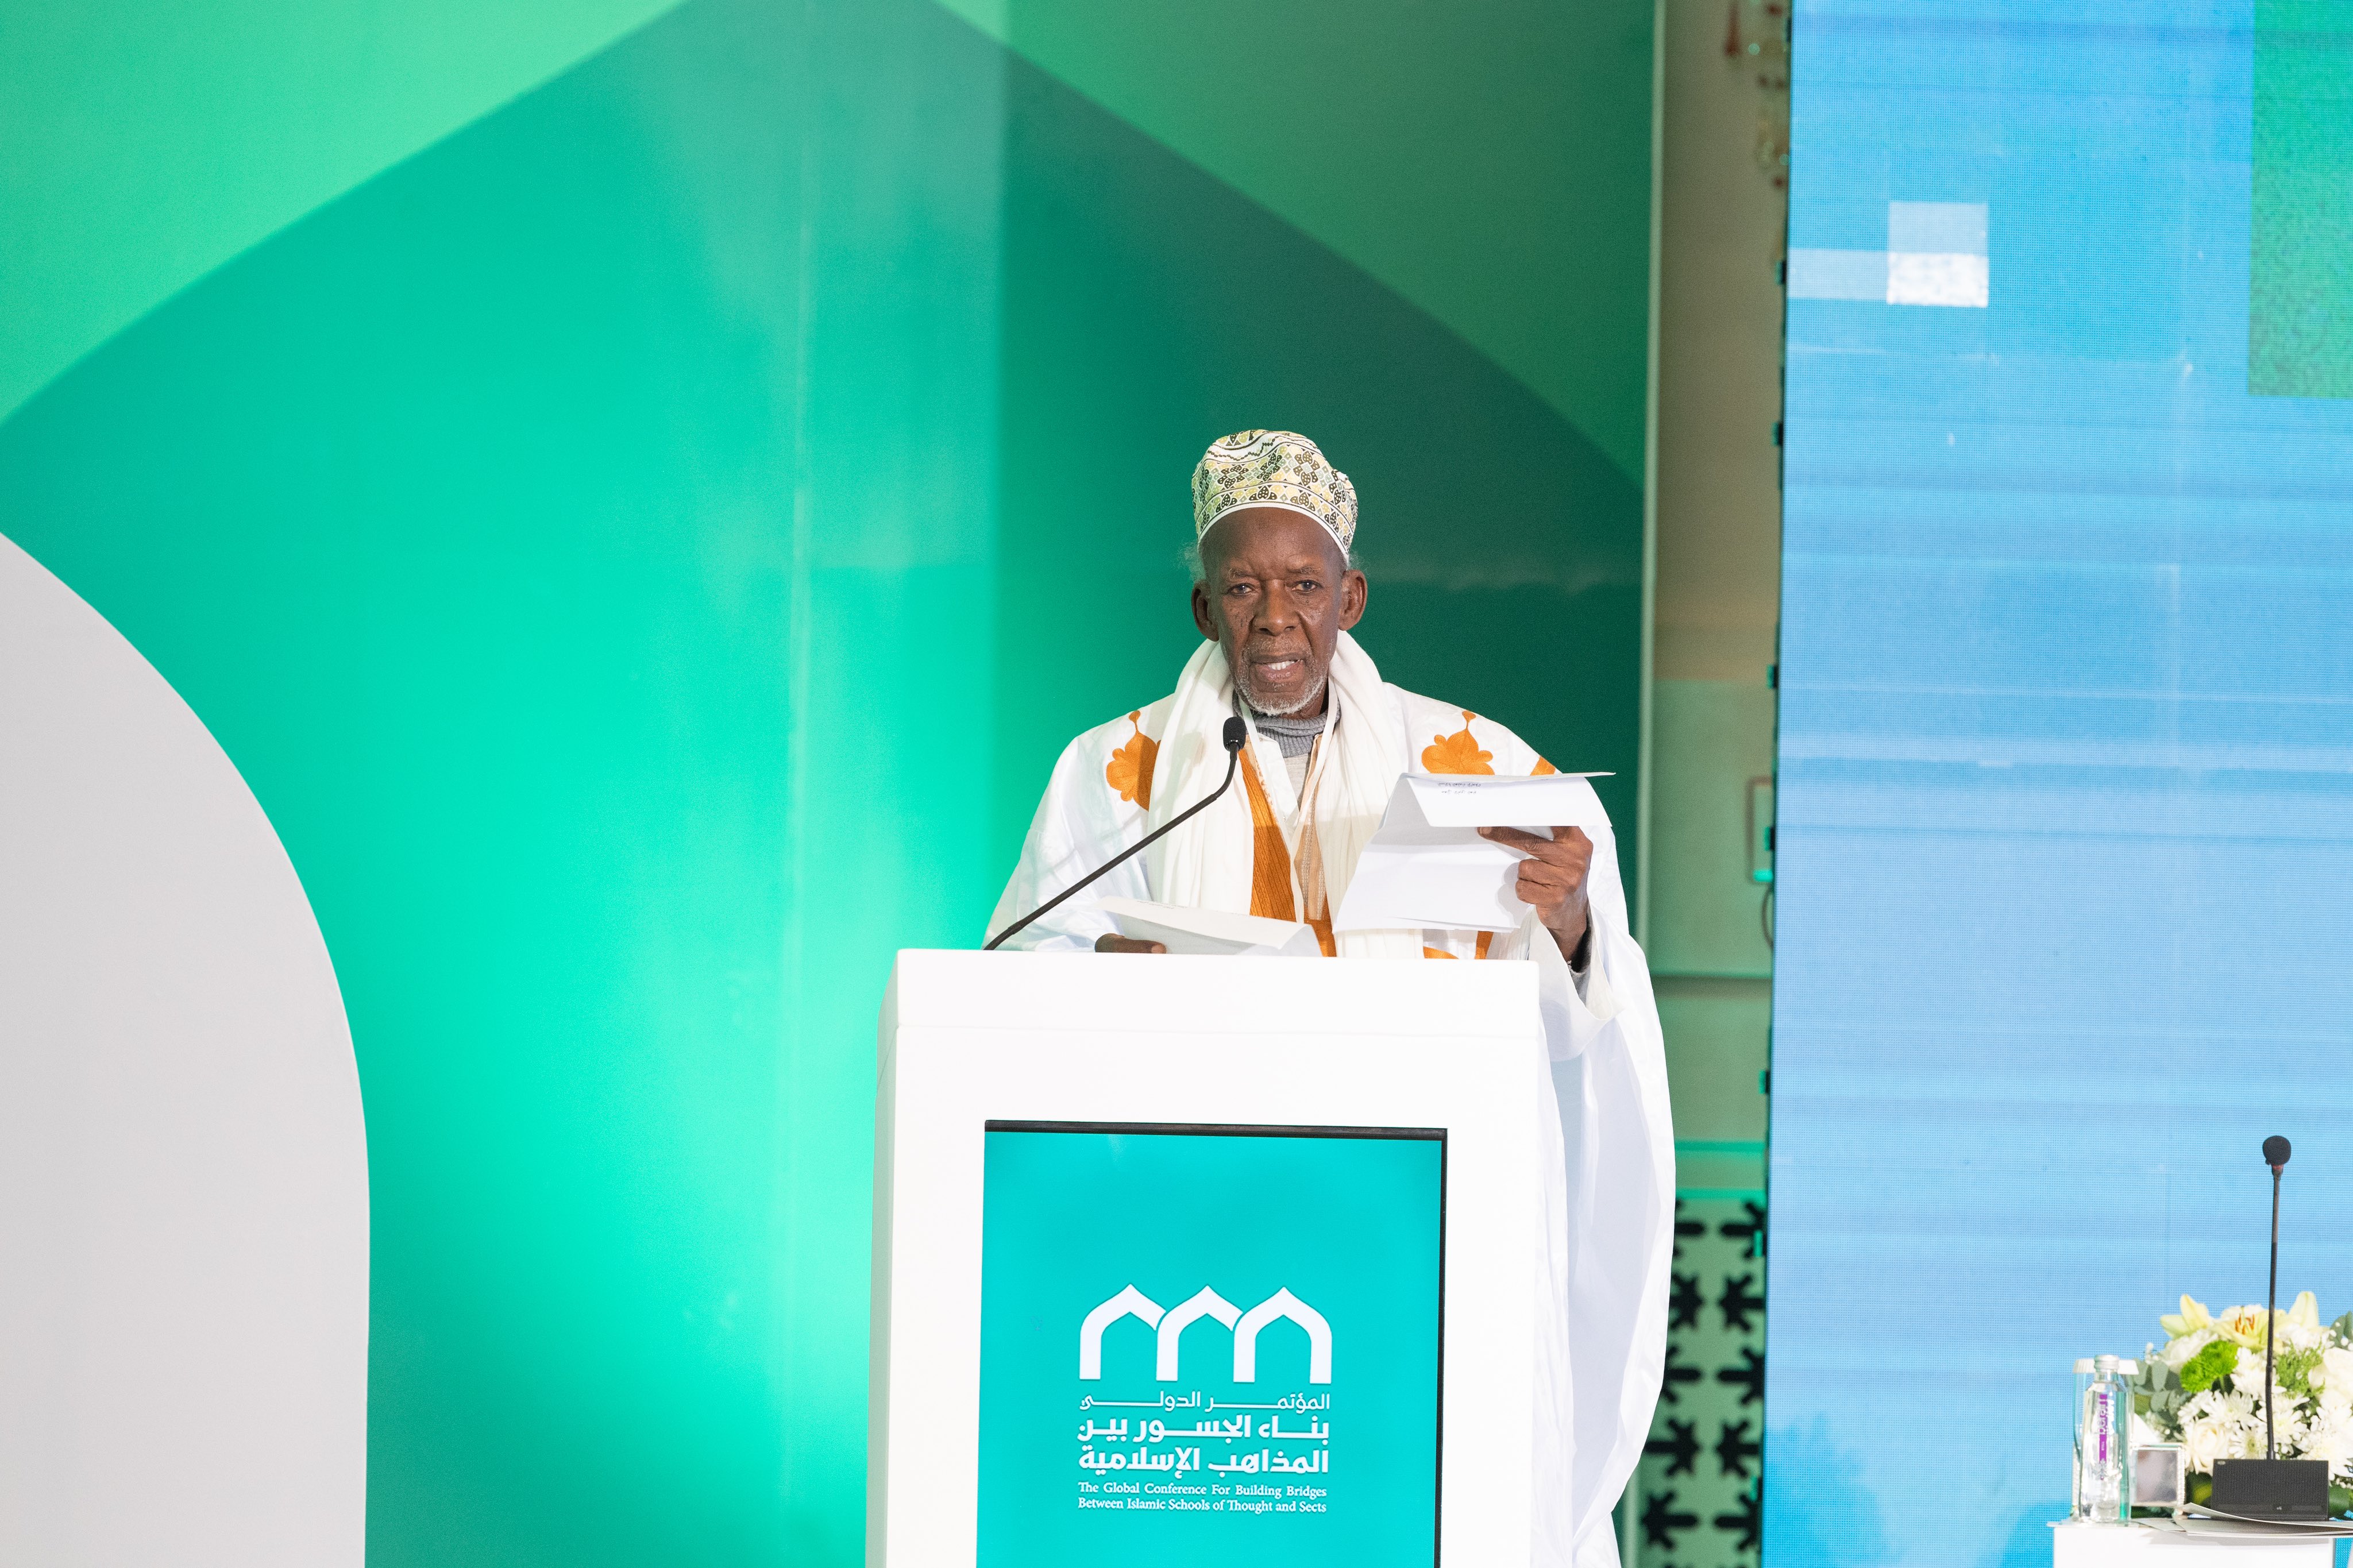 افریقی اسلامی یونین کے صدر شیخ محمد الماحی بن شیخ ابراہیم نیاس ”اسلامی مذاہب کے درمیان پلوں کی تعمیر“ کانفرنس کےافتتاحی اجلاس سے خطاب کرتے ہوئے: